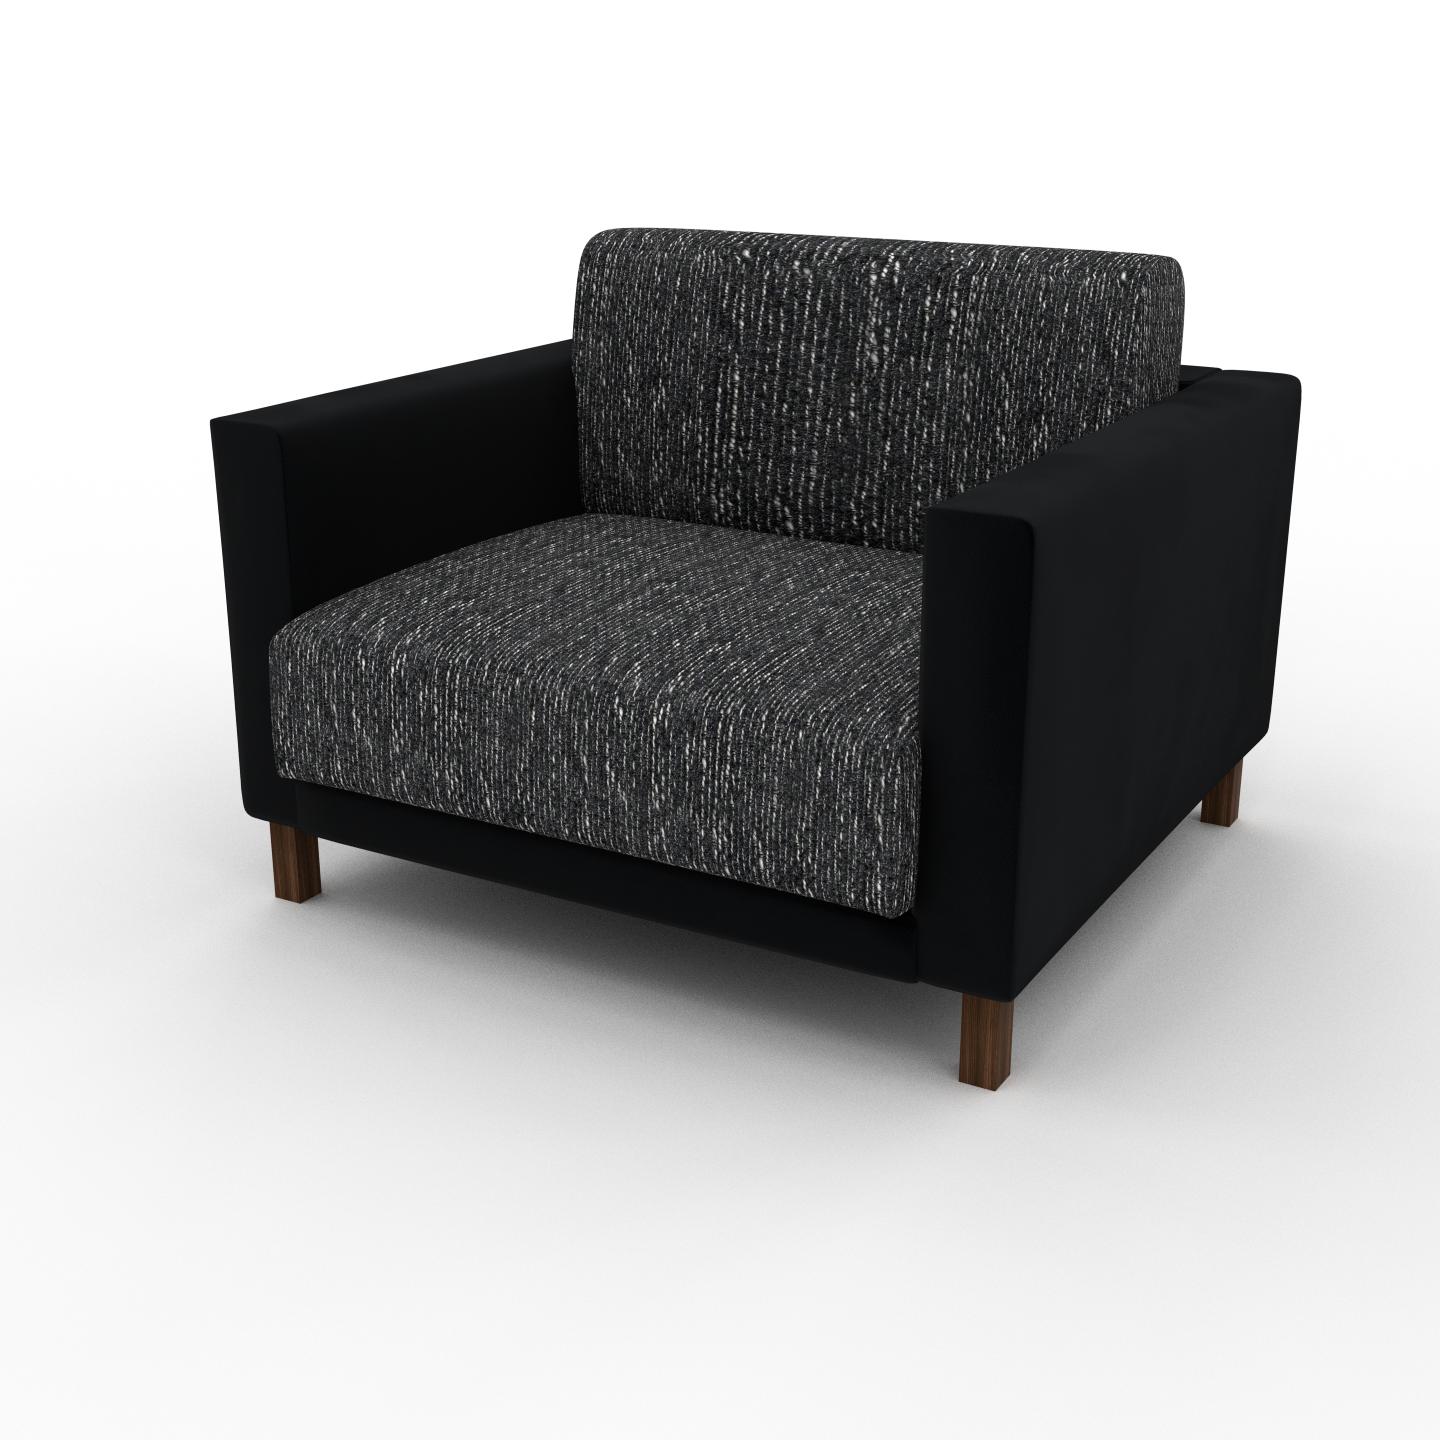 MYCS Sessel Lavaschwarz - Eleganter Sessel: Hochwertige Qualität, einzigartiges Design - 104 x 75 x 98 cm, Individuell konfigurierbar